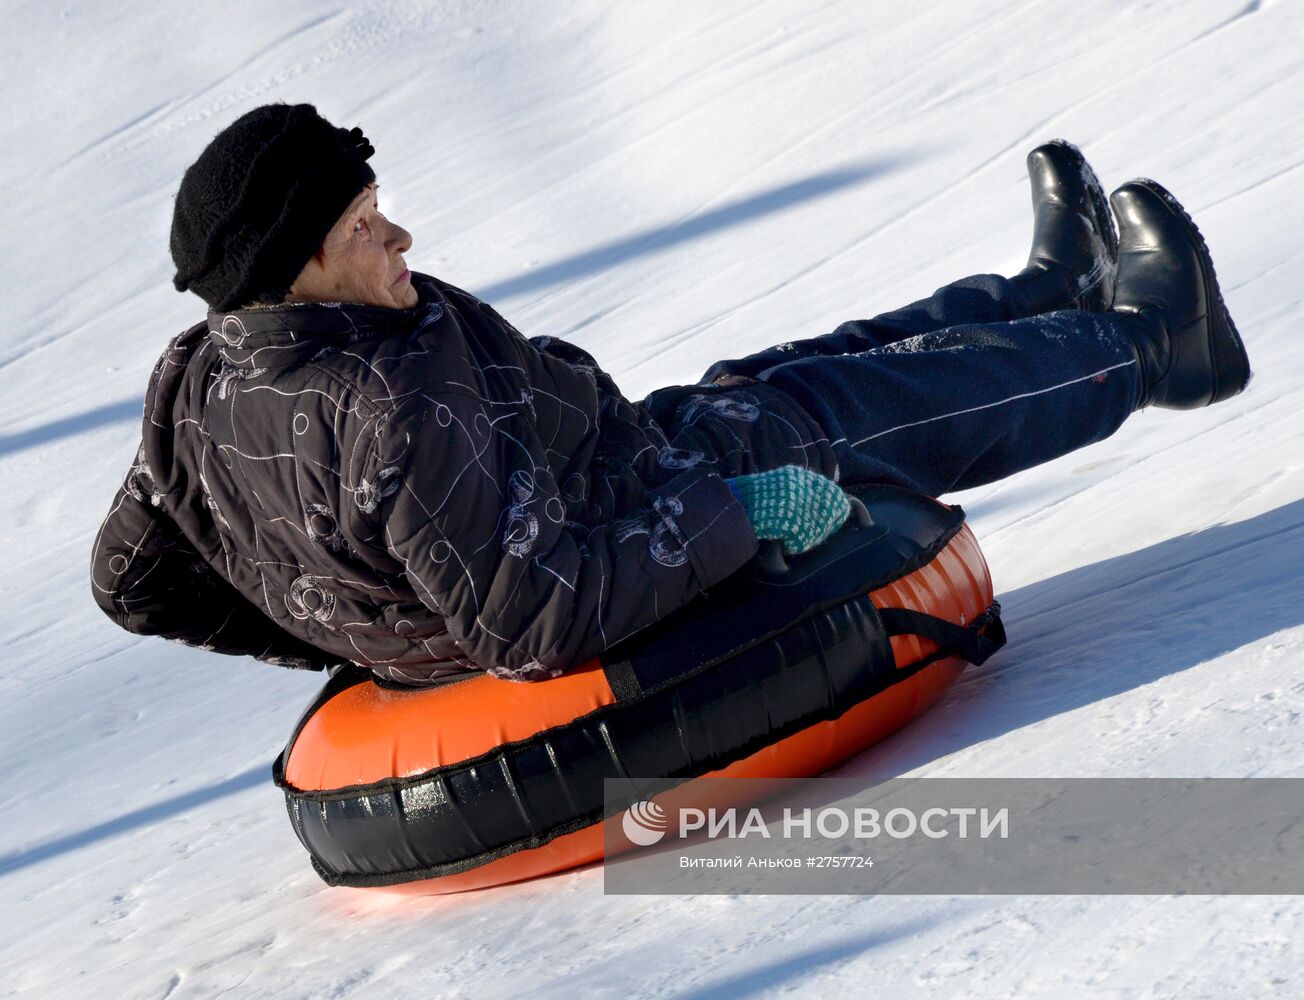 Открытие зимнего сезона в Приморском крае